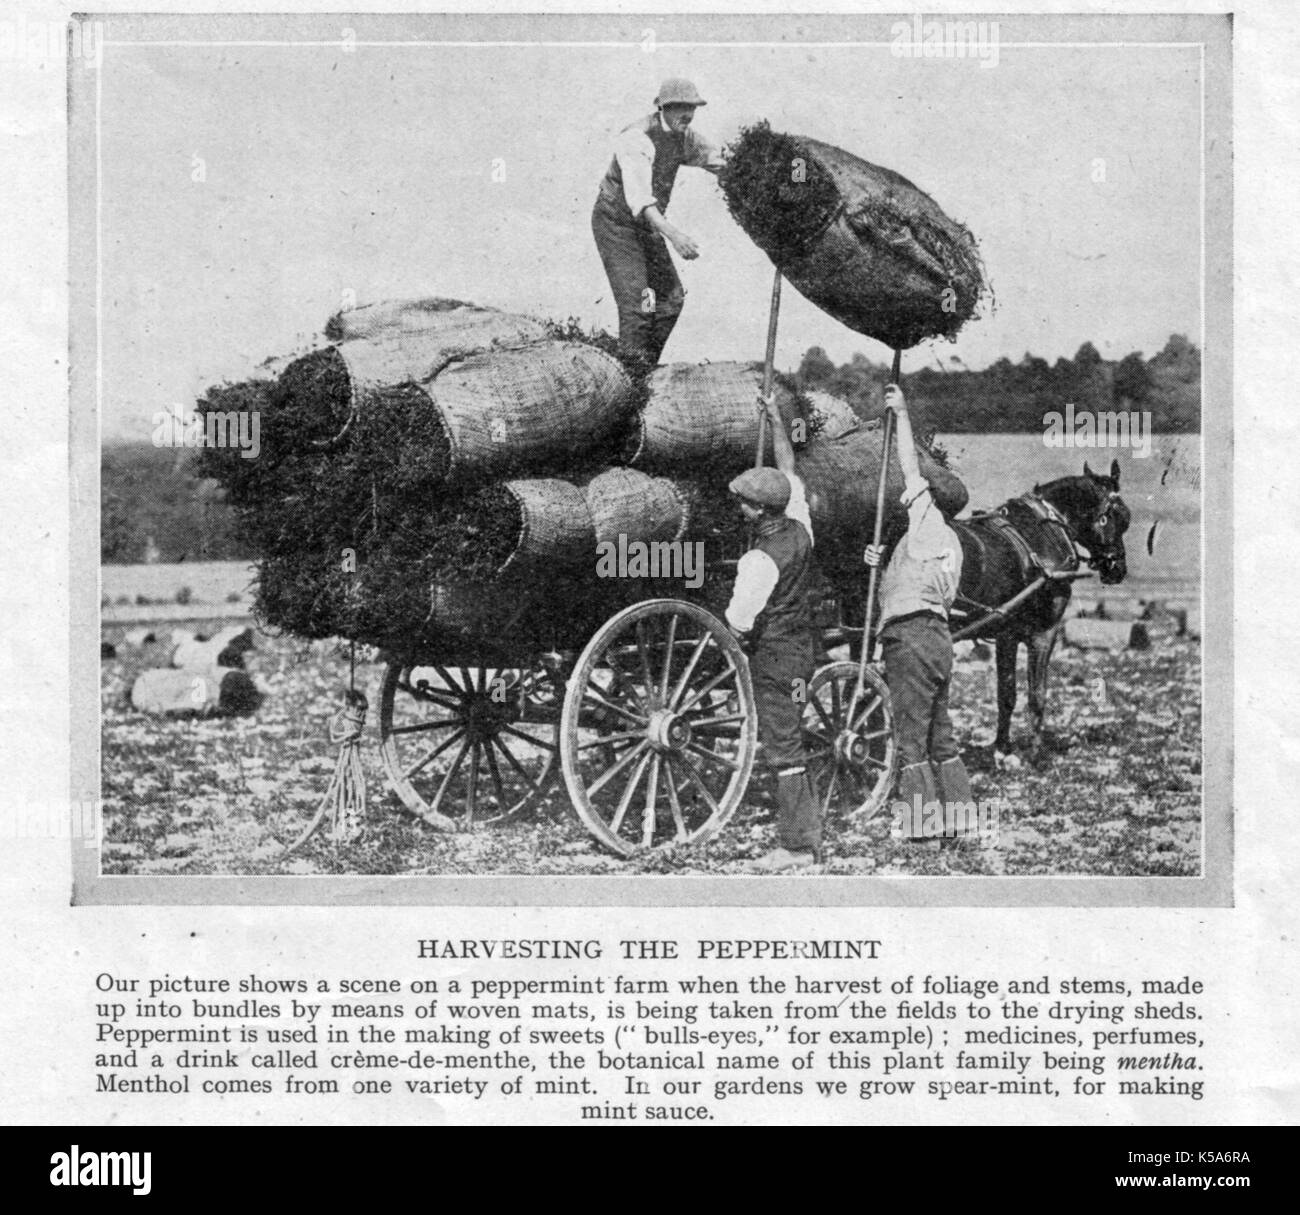 Allevamento di menta piperita in Inghilterra settentrionale -1930's - raccolta prima di essiccazione e utilizzato per aromatizzare i dolci, profumi, farmaci, tè ecc. Foto Stock